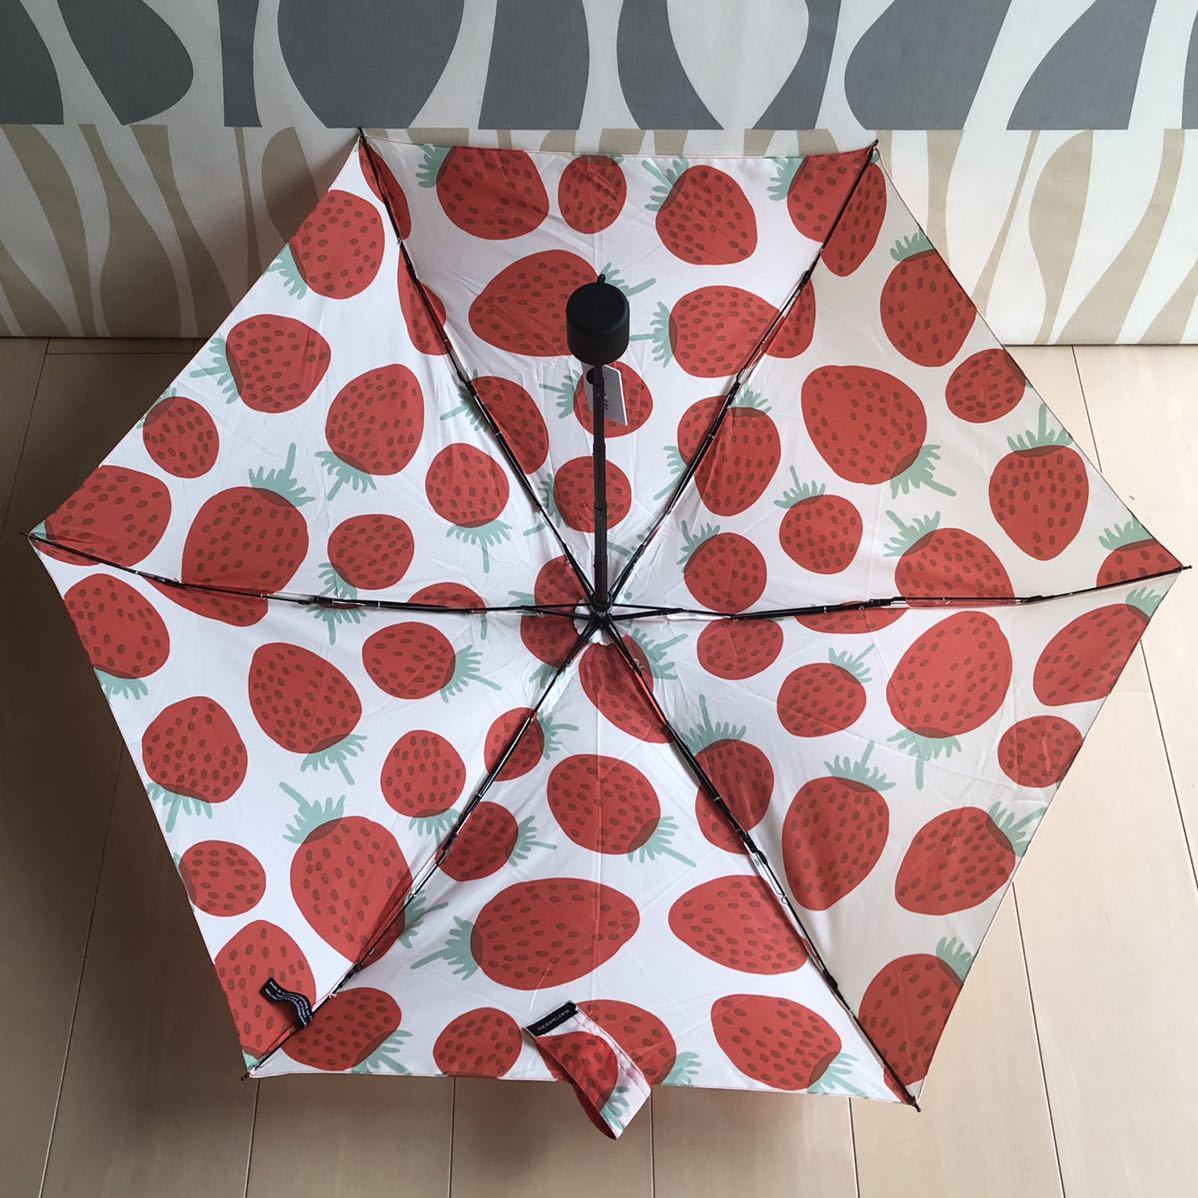  новый товар marimekko складной зонт MANSIKKA man sika